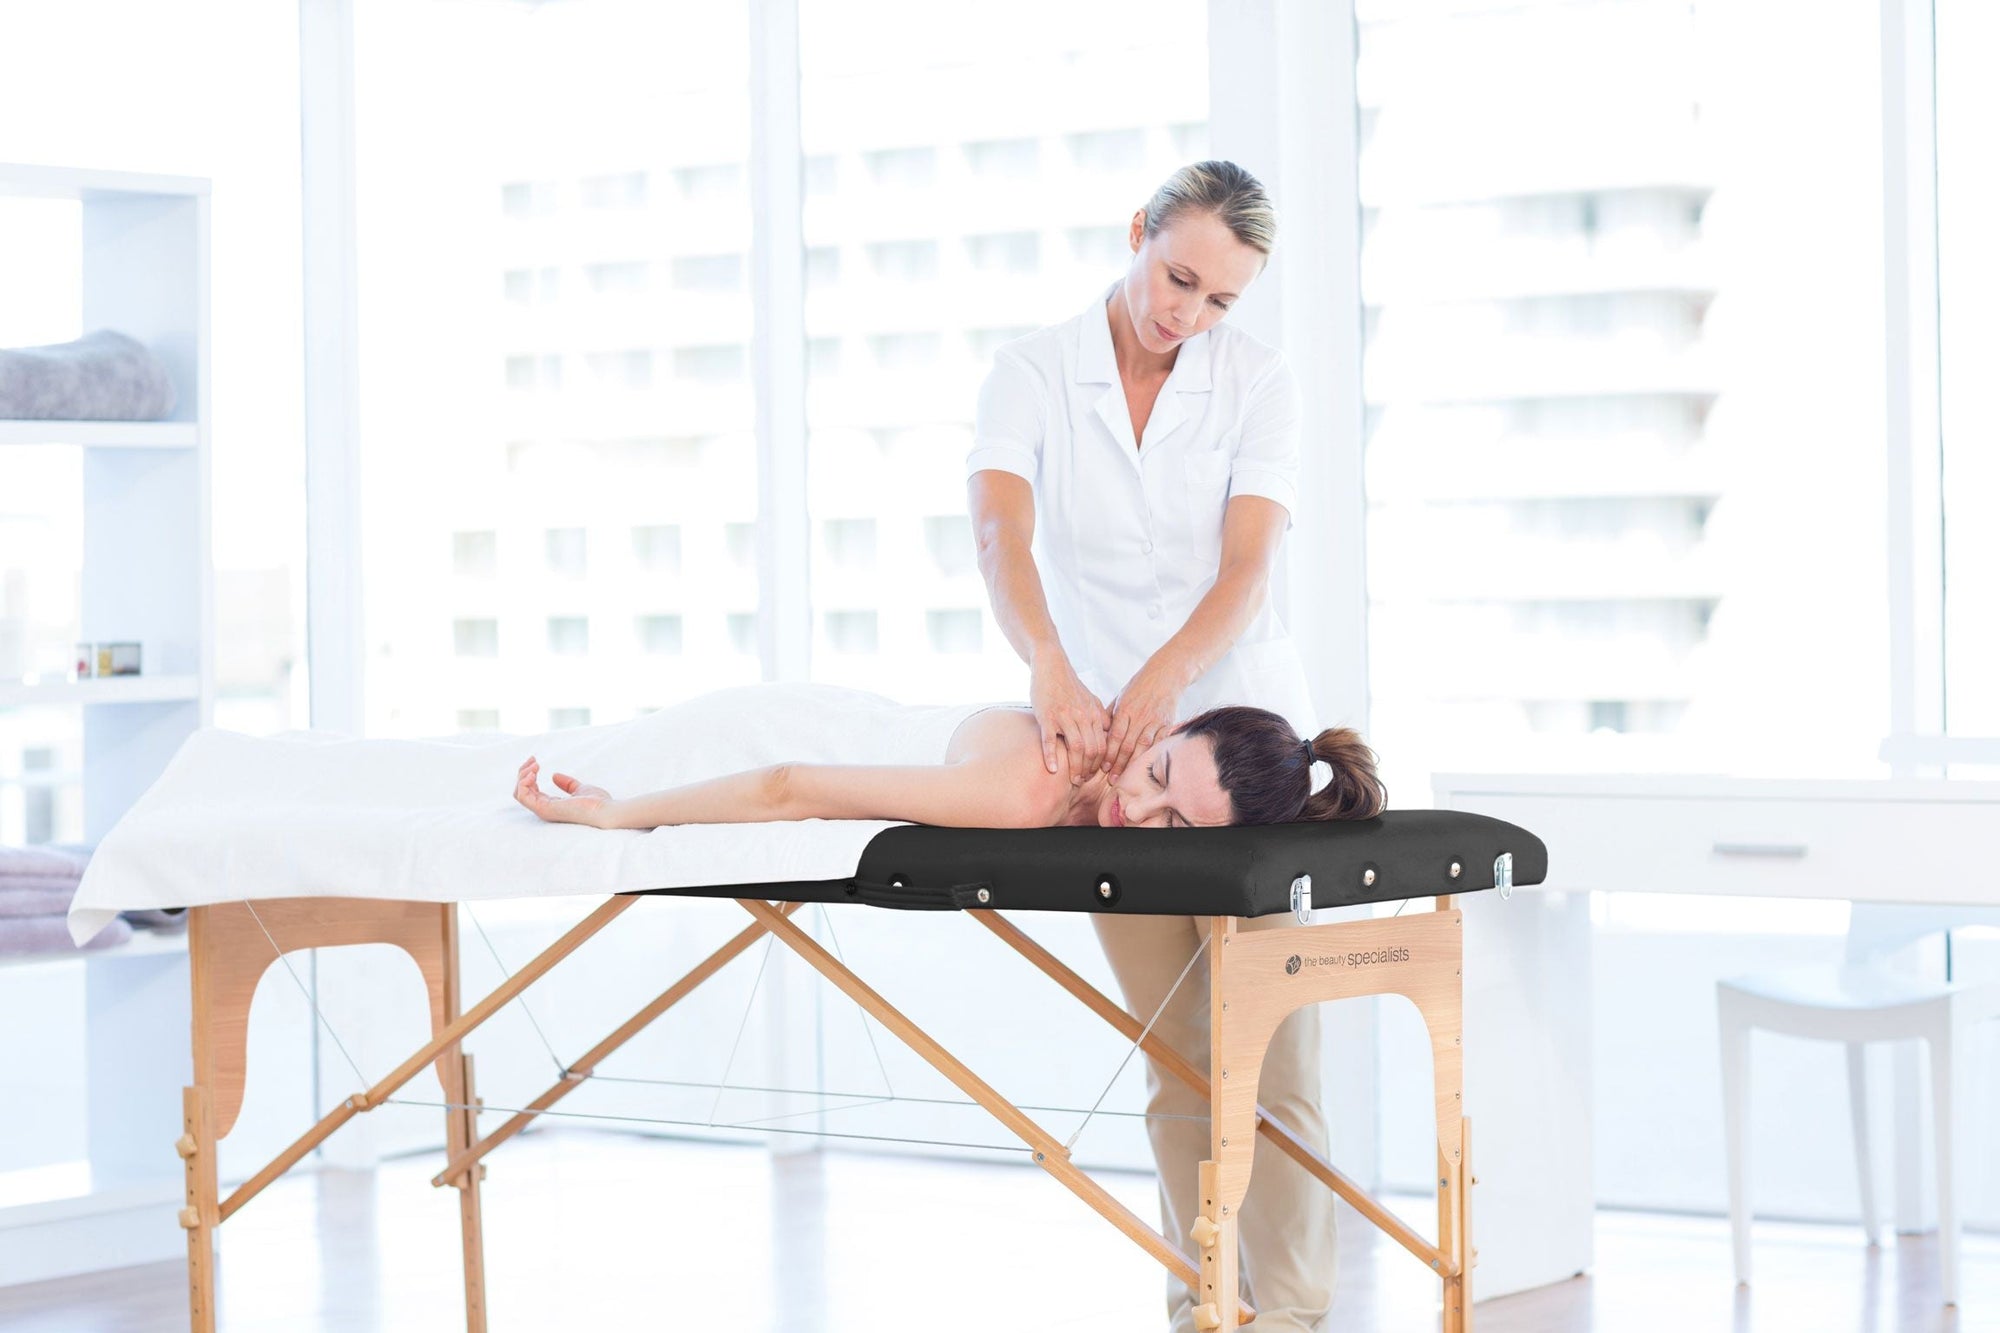 Lettino da massaggio portatile ultraleggero professionale